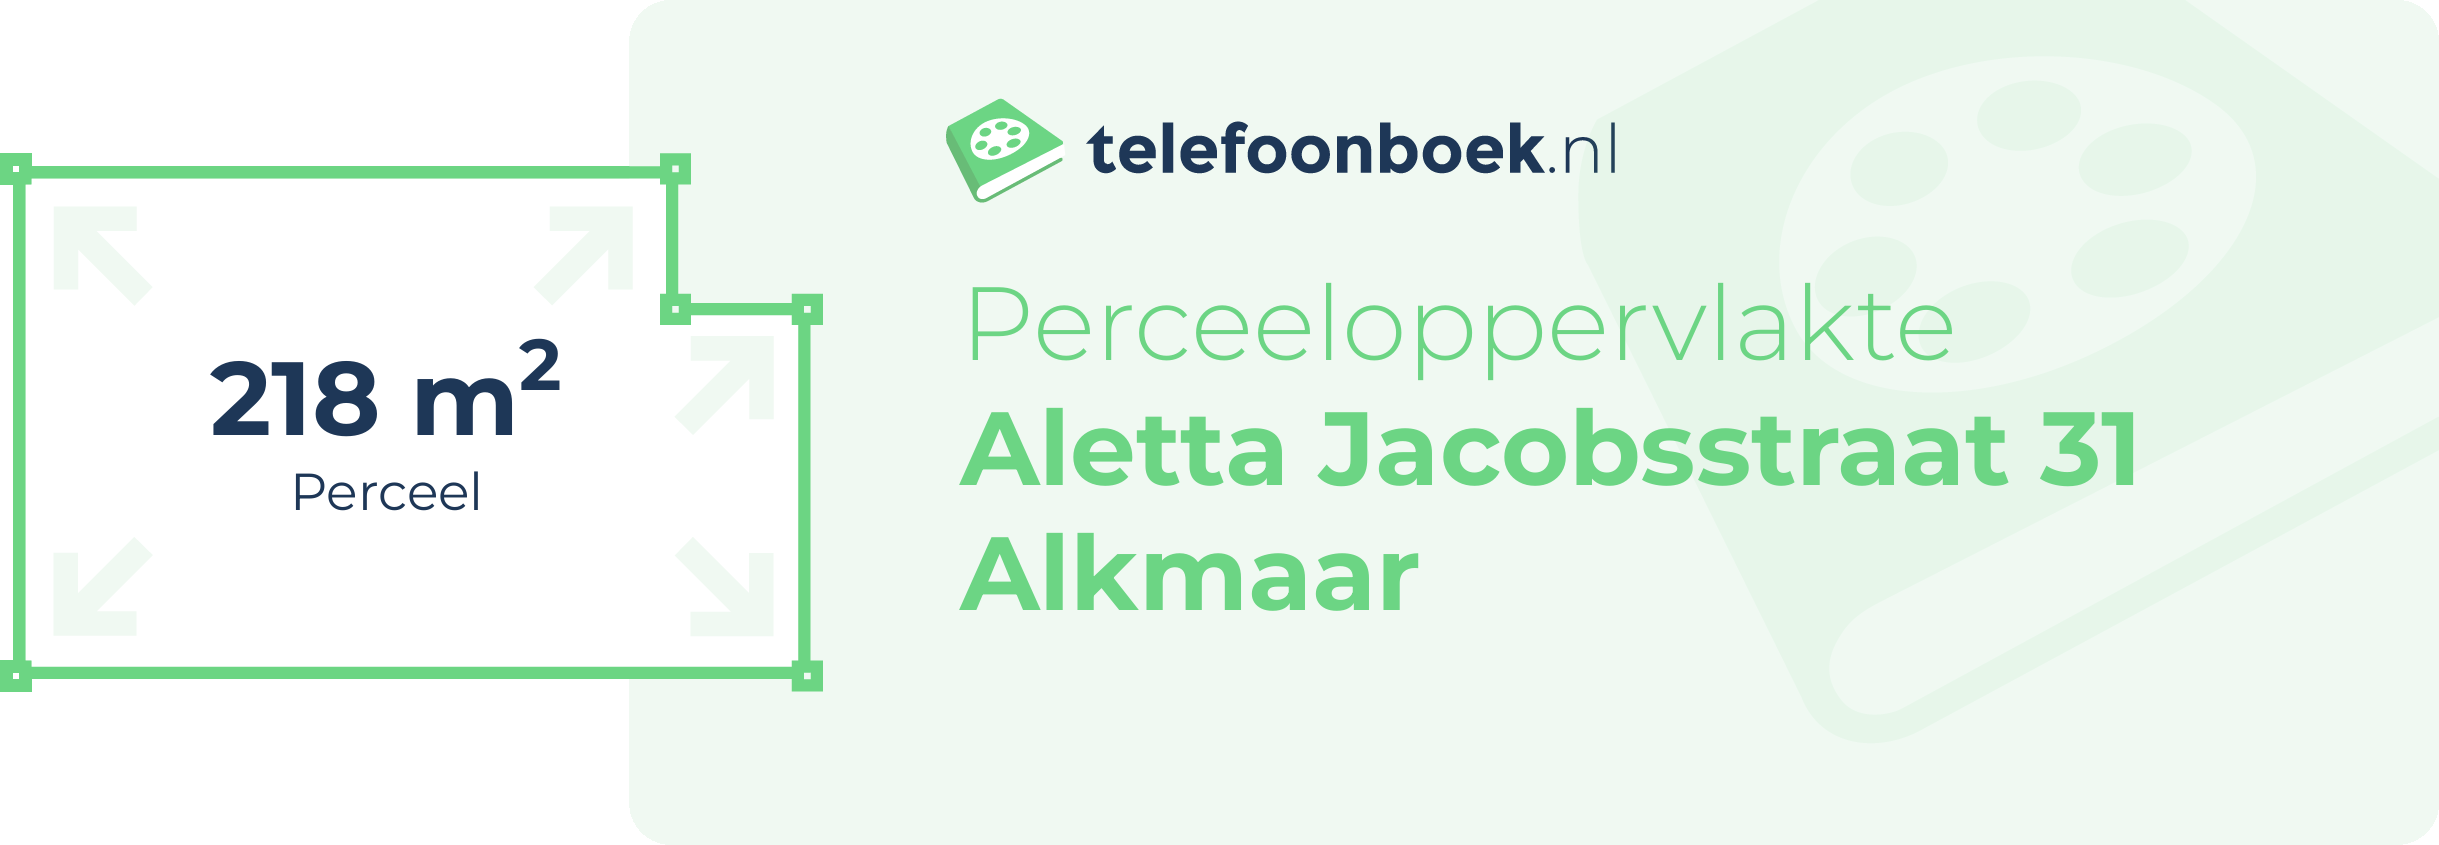 Perceeloppervlakte Aletta Jacobsstraat 31 Alkmaar